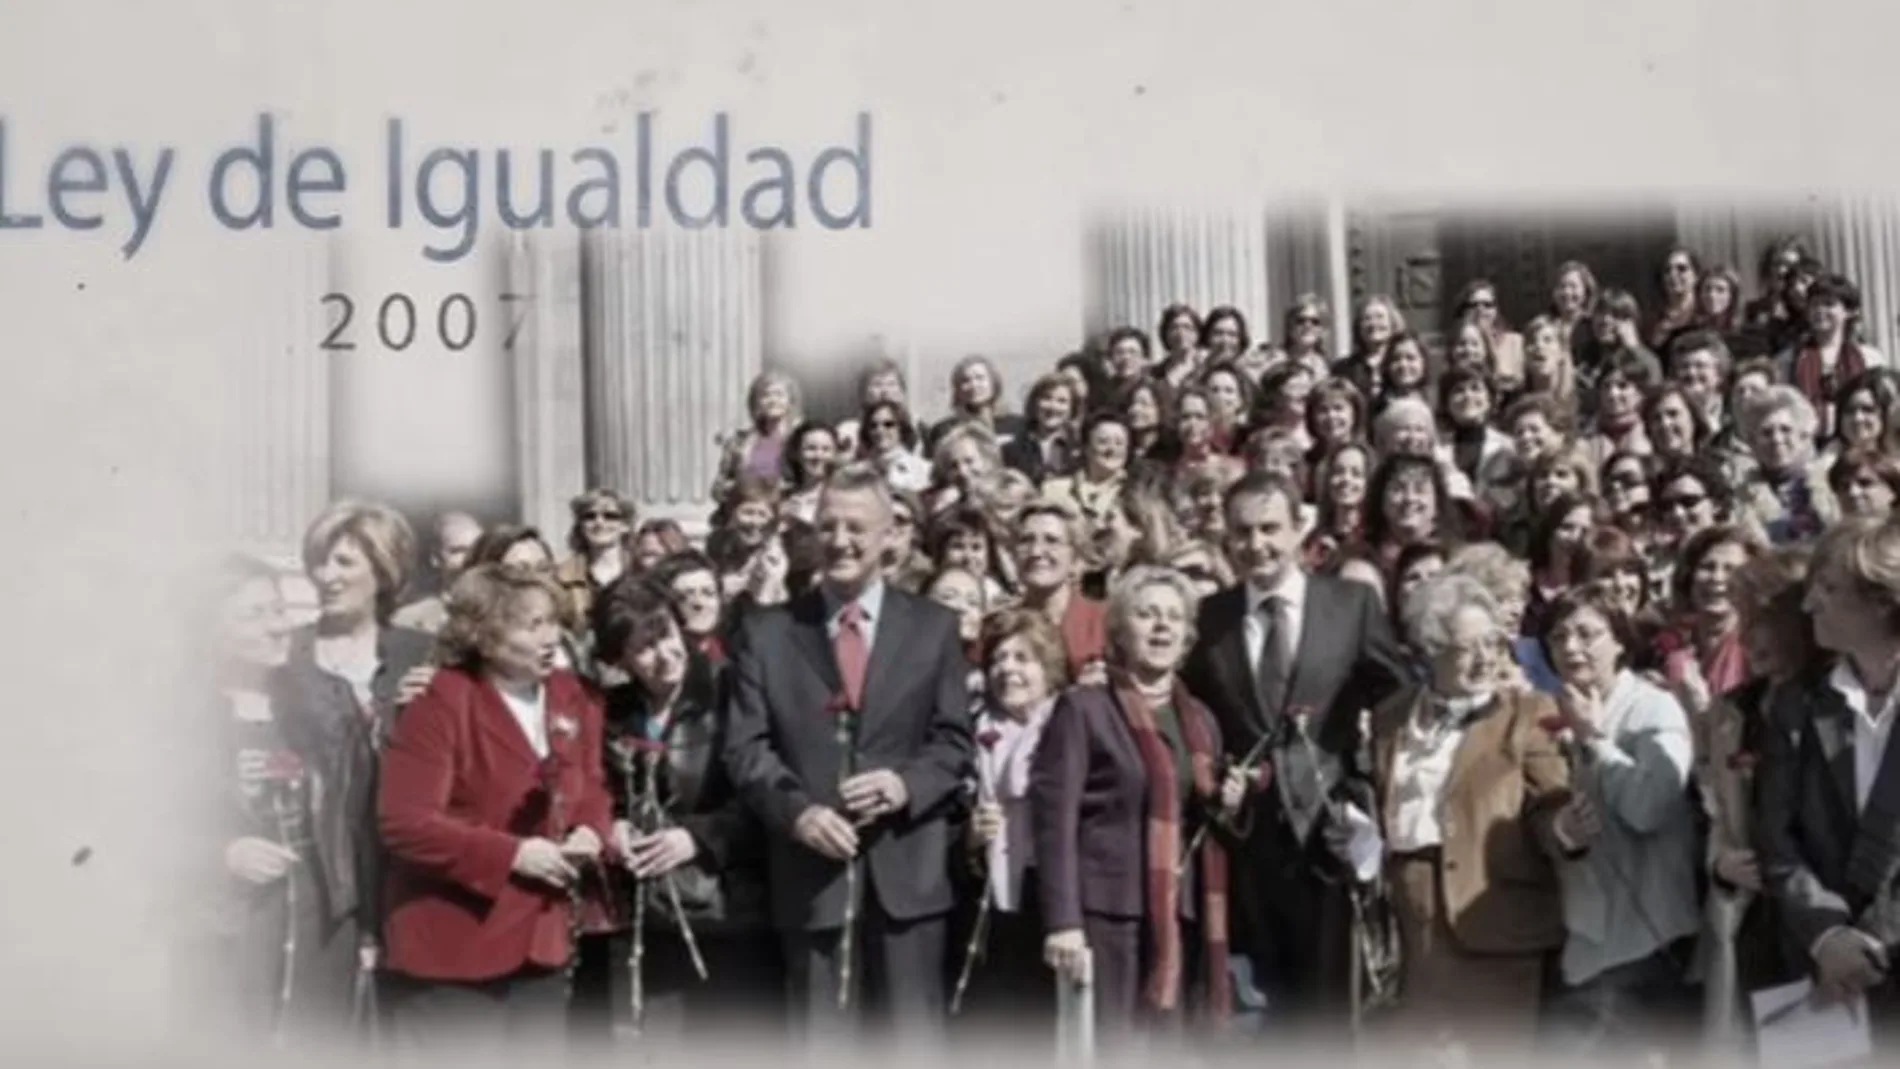 Reivindica los logros desde el primer gobierno de Felipe González hasta el último Ejecutivo socialista, el de José Luis Rodríguez Zapatero.